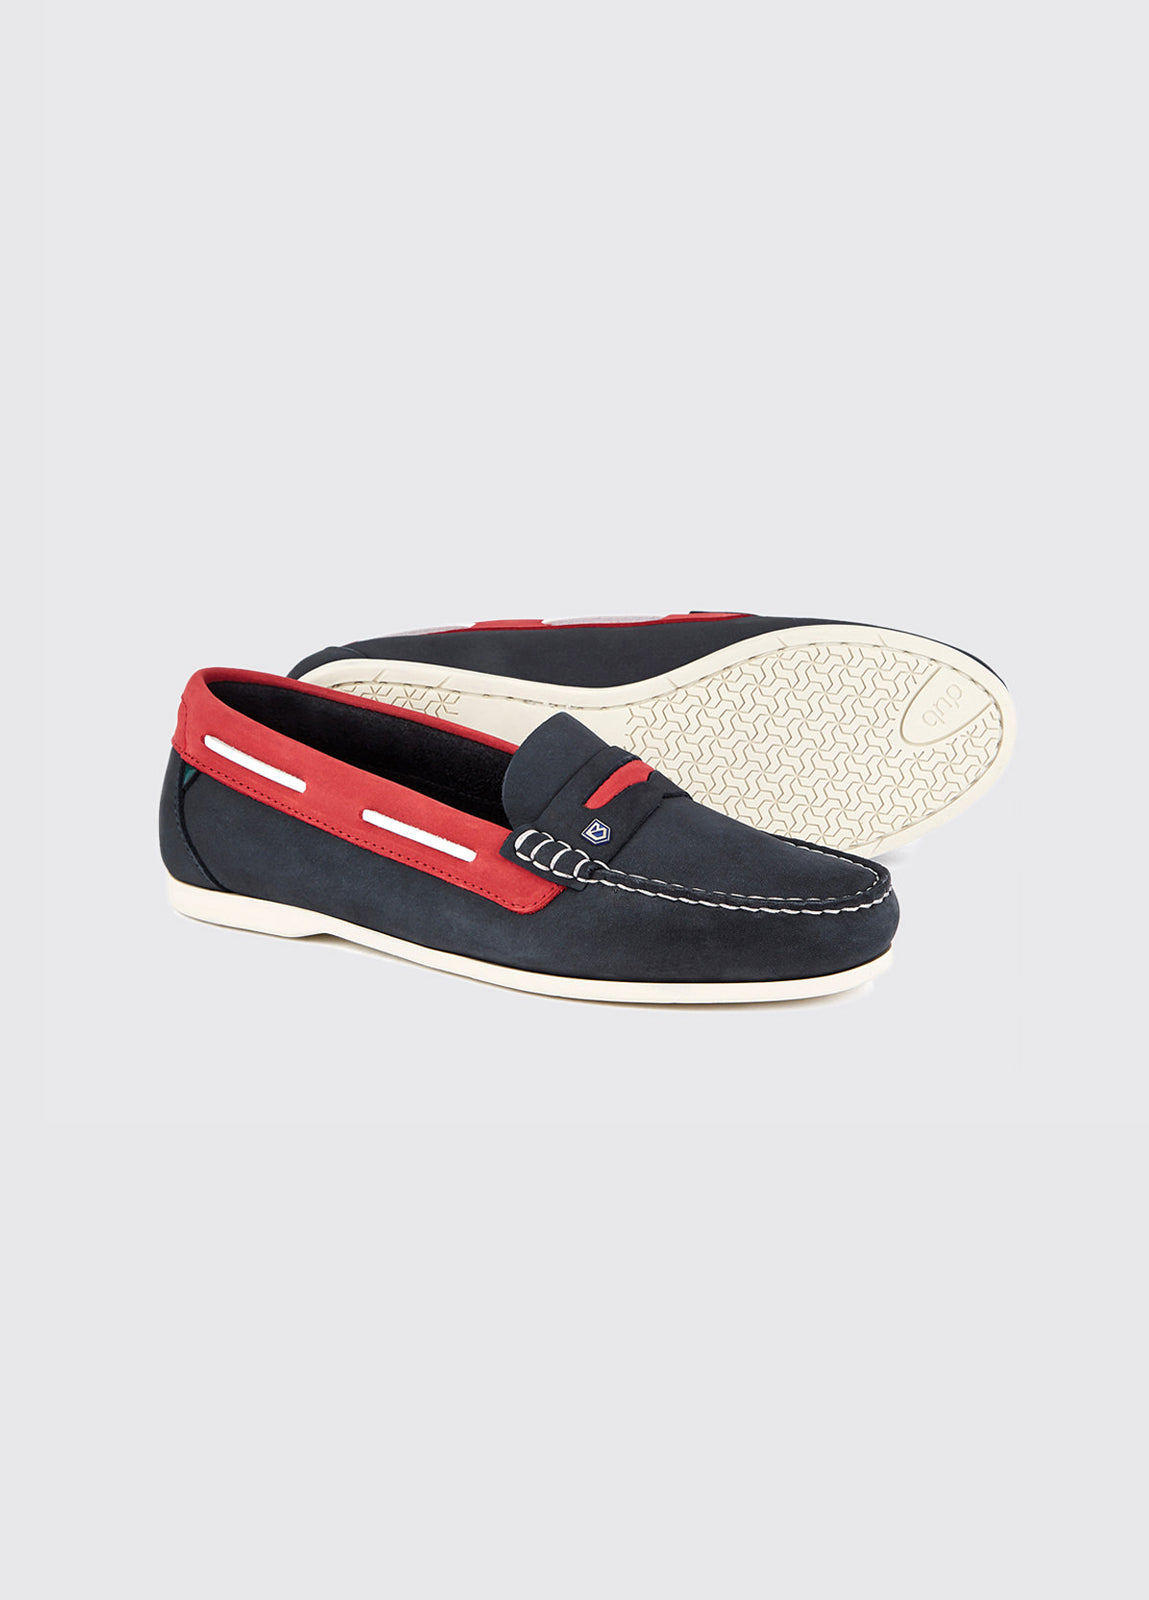 Belize Deck Shoe - Denim/Red